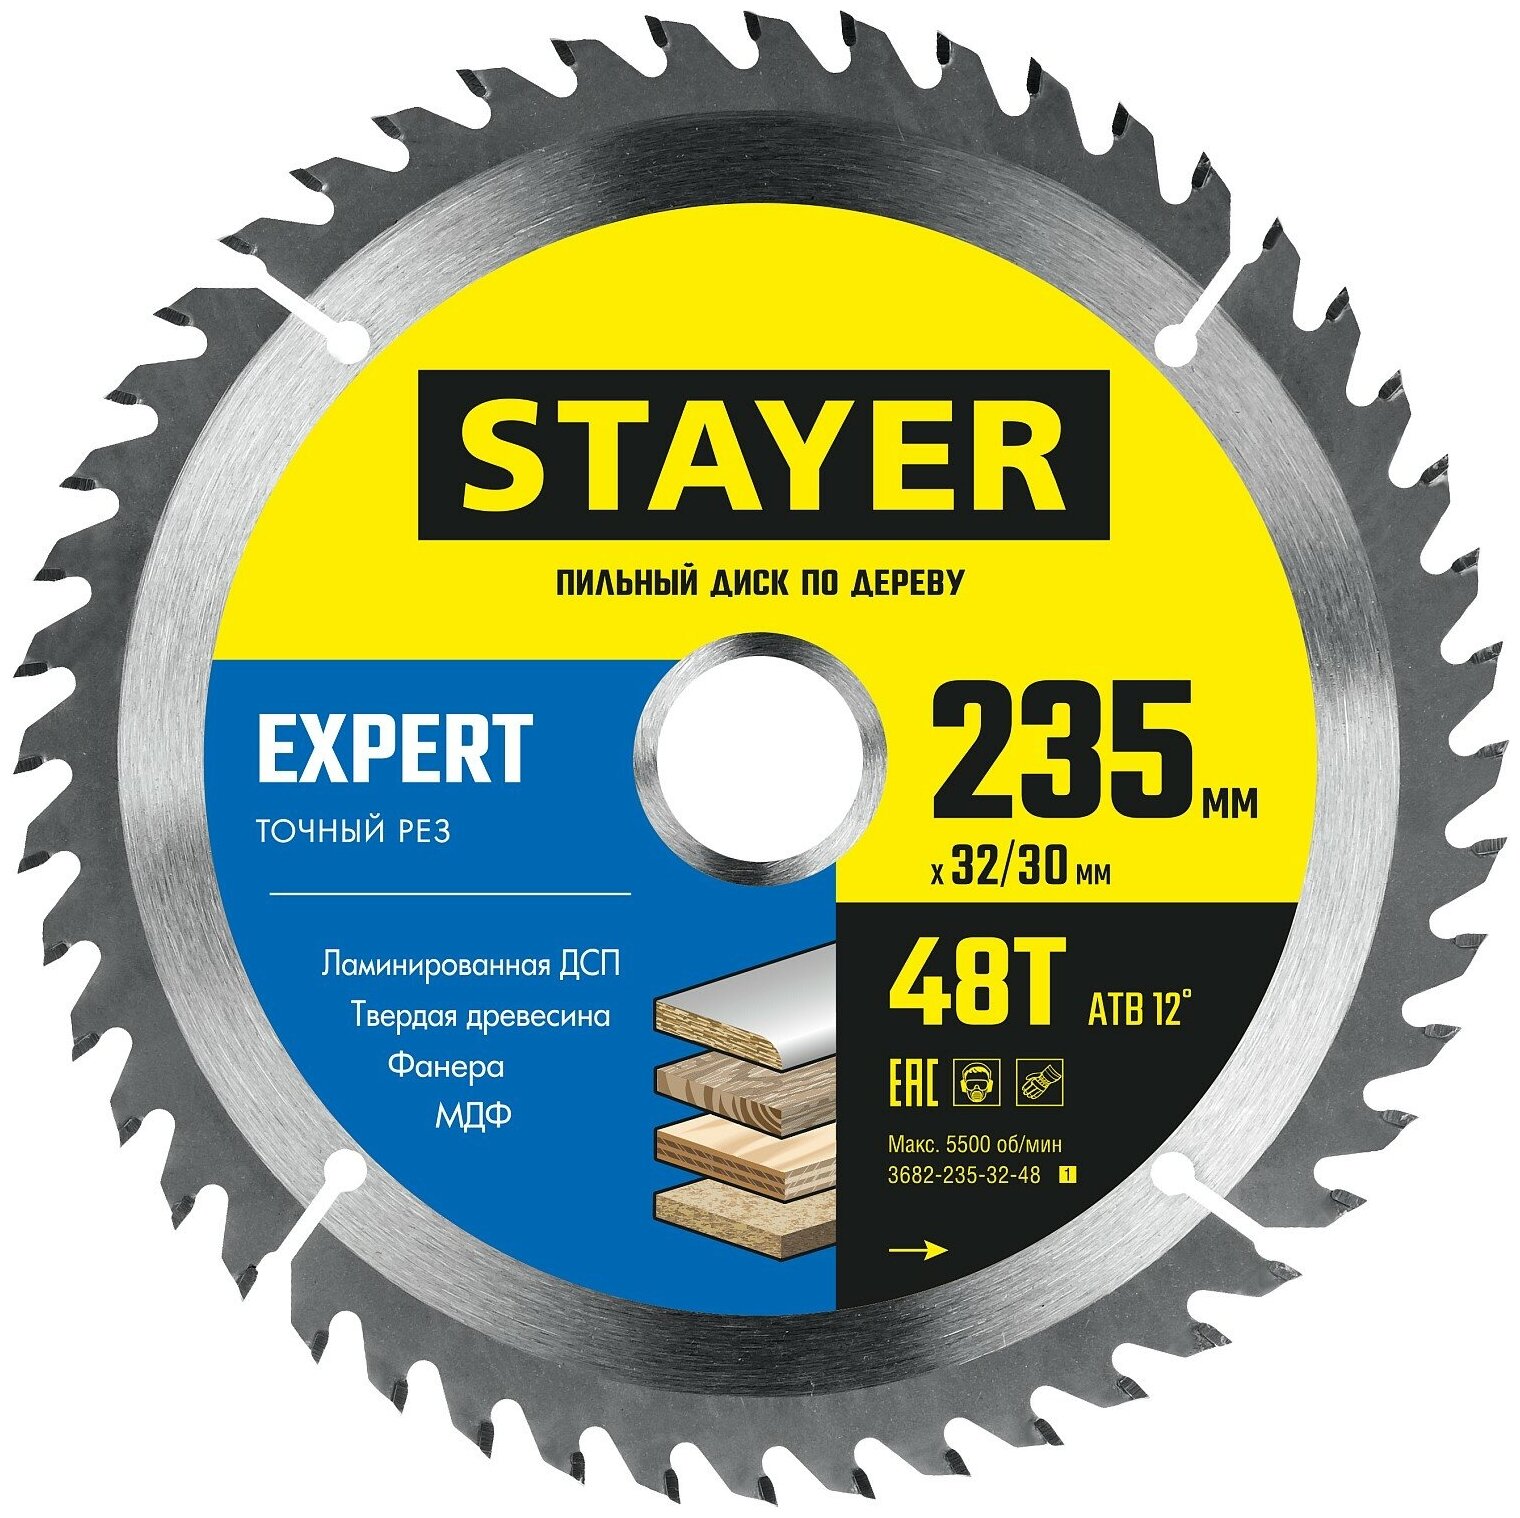 STAYER Expert, 235 x 32/30 мм, 48Т, точный рез, пильный диск по дереву (3682-235-32-48)